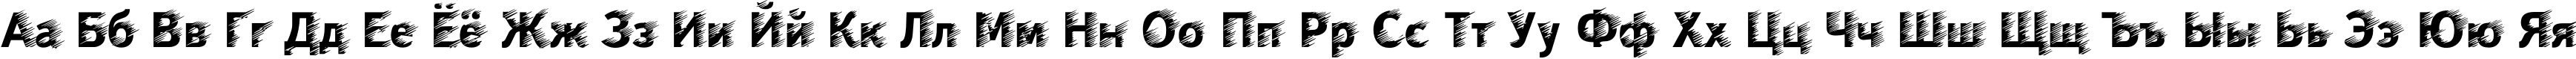 Пример написания русского алфавита шрифтом Wind